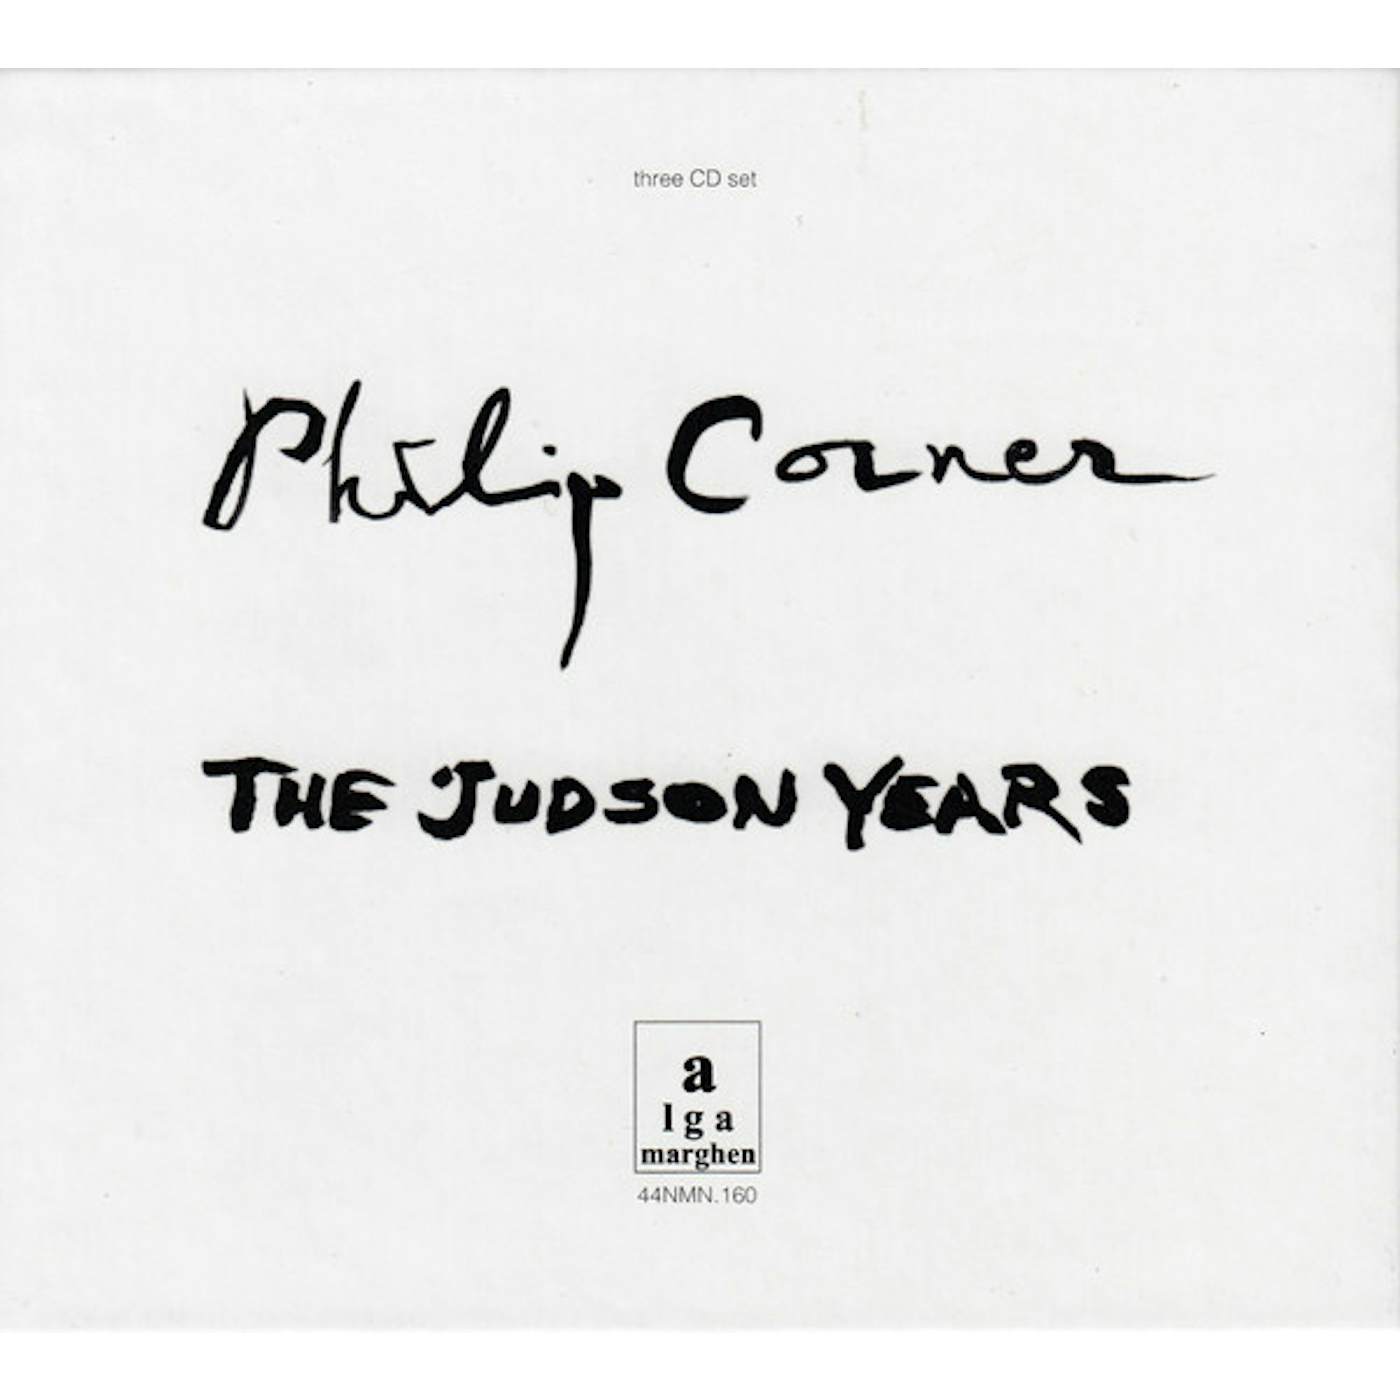 Philip Corner JUDSON YEARS CD